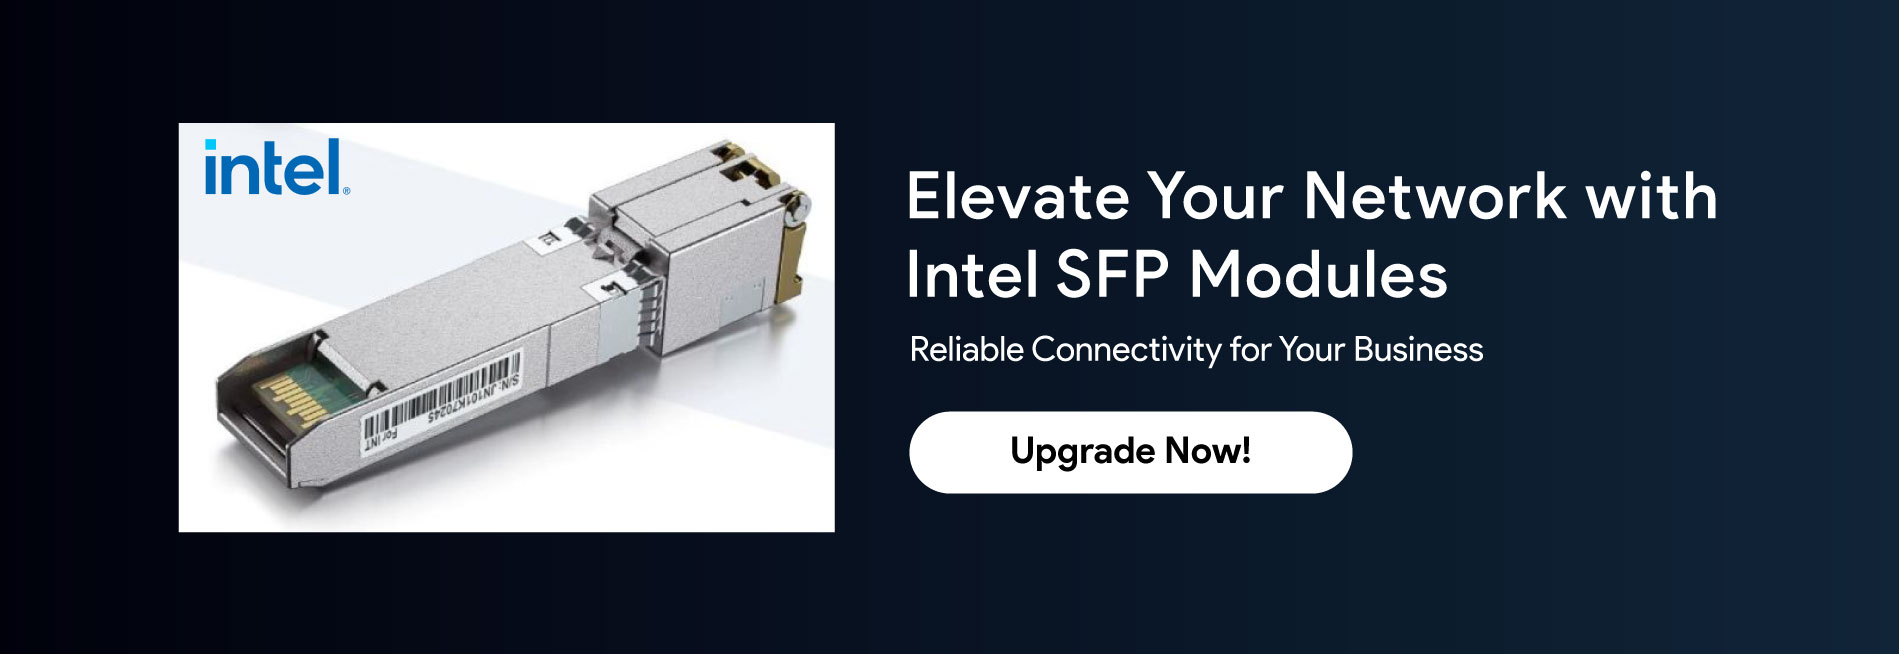 Intel-SFP-Modules